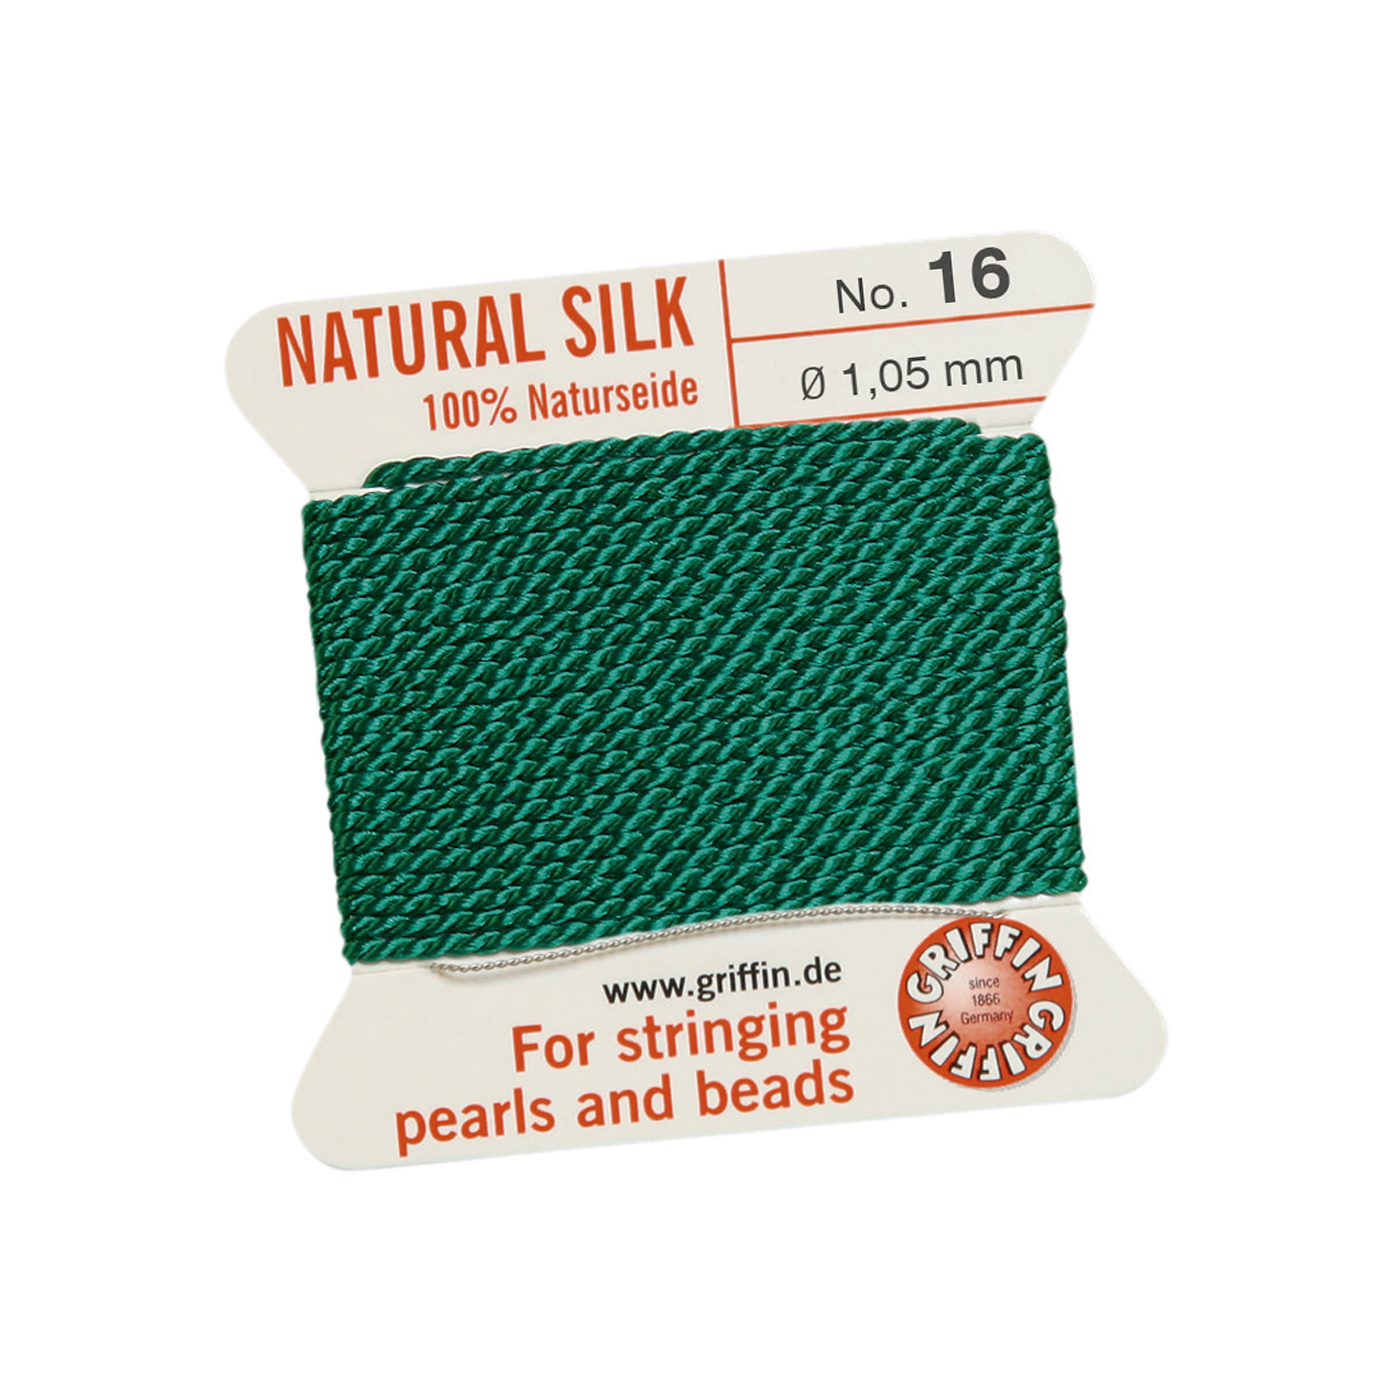 Bead Cord 100% Natural Silk, Green, No. 16 - 2 m